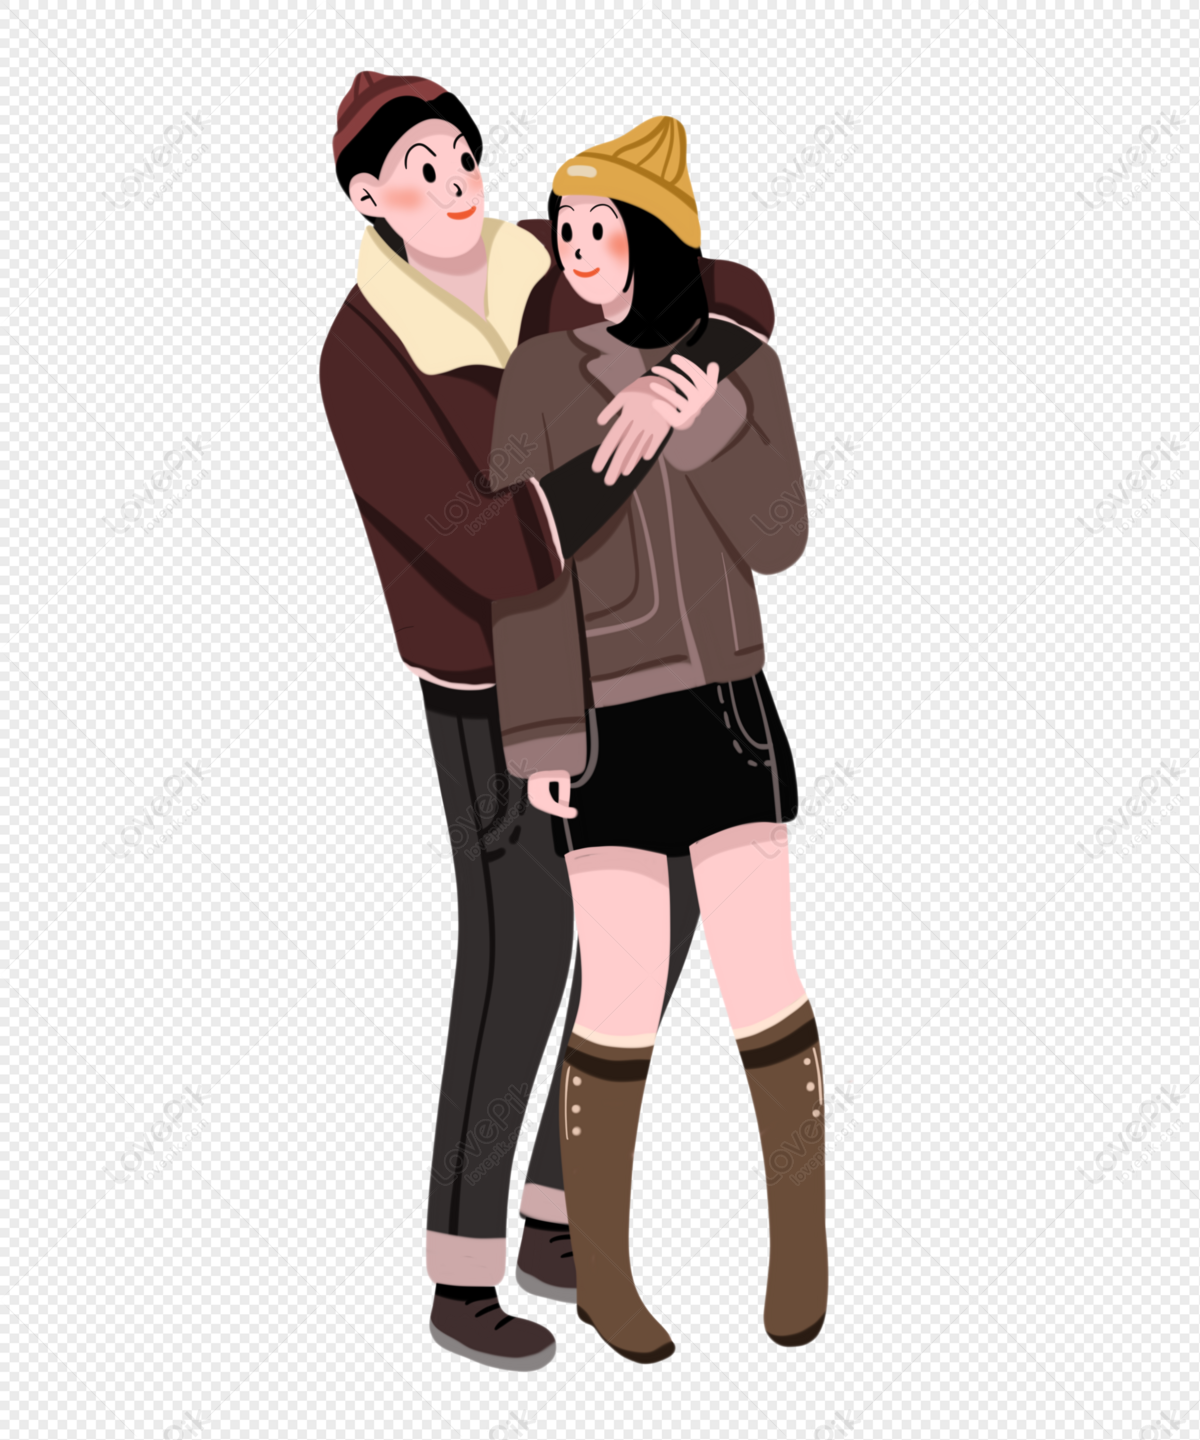 Hình ảnh Cặp đôi ôm nhau PNG: Khoảnh khắc ôm chặt người yêu của mình sẽ khiến bạn cảm thấy ấm áp và hạnh phúc. Với hình ảnh Cặp đôi ôm nhau PNG, bạn sẽ cảm nhận được độ chân thật và tình cảm đích thực của tình yêu.